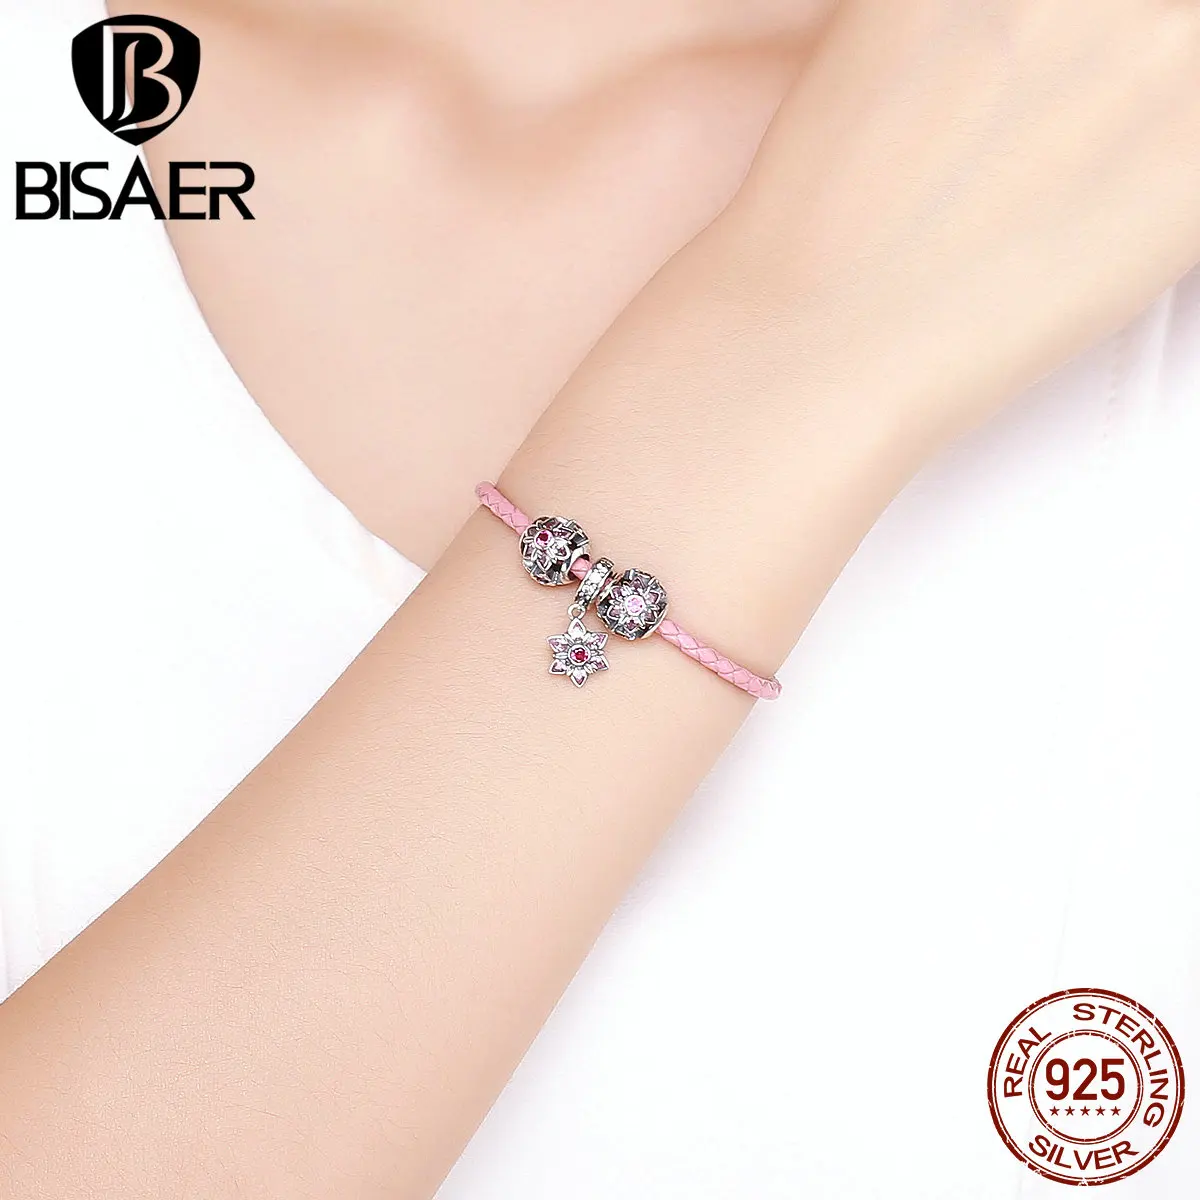 BISAER браслеты с подвесками для женщин 925 пробы Серебряный Розовый CZ Кристалл Цветочный коллекция бисера кожаные браслеты Femme подарок GXB816